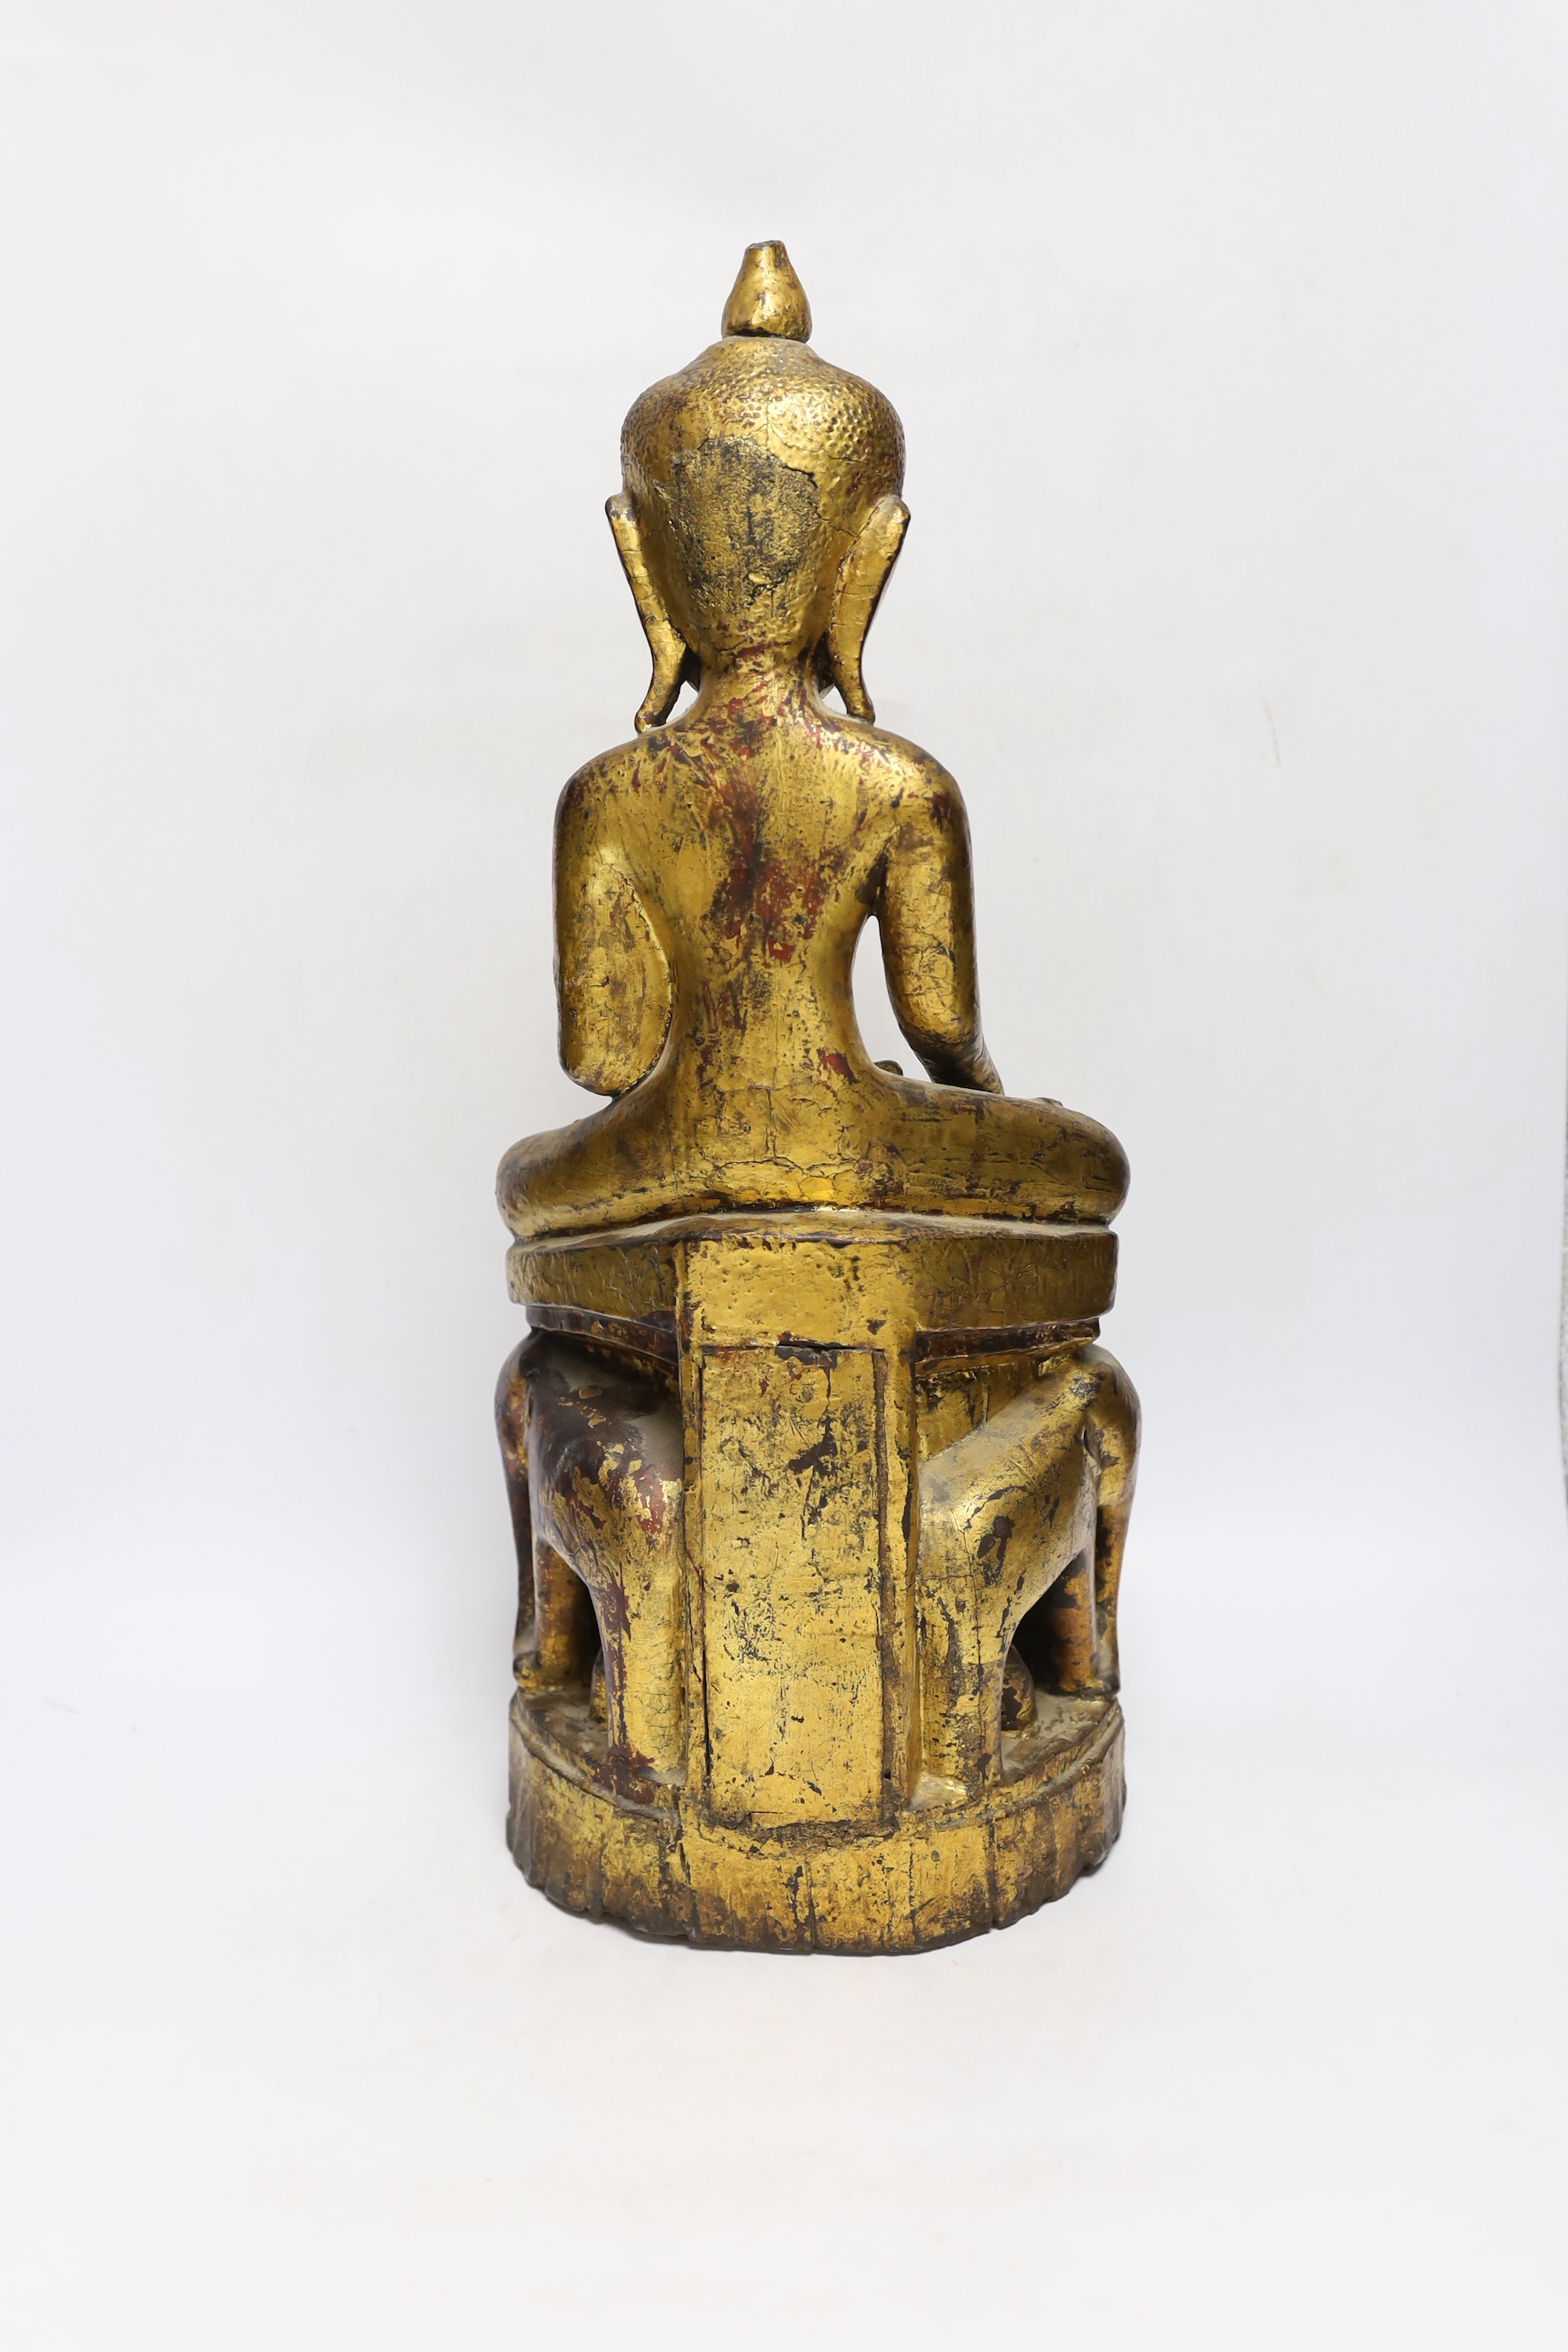 A 19th century Burmese or Thai giltwood figure of Buddha, on an elephant throne, 52cm